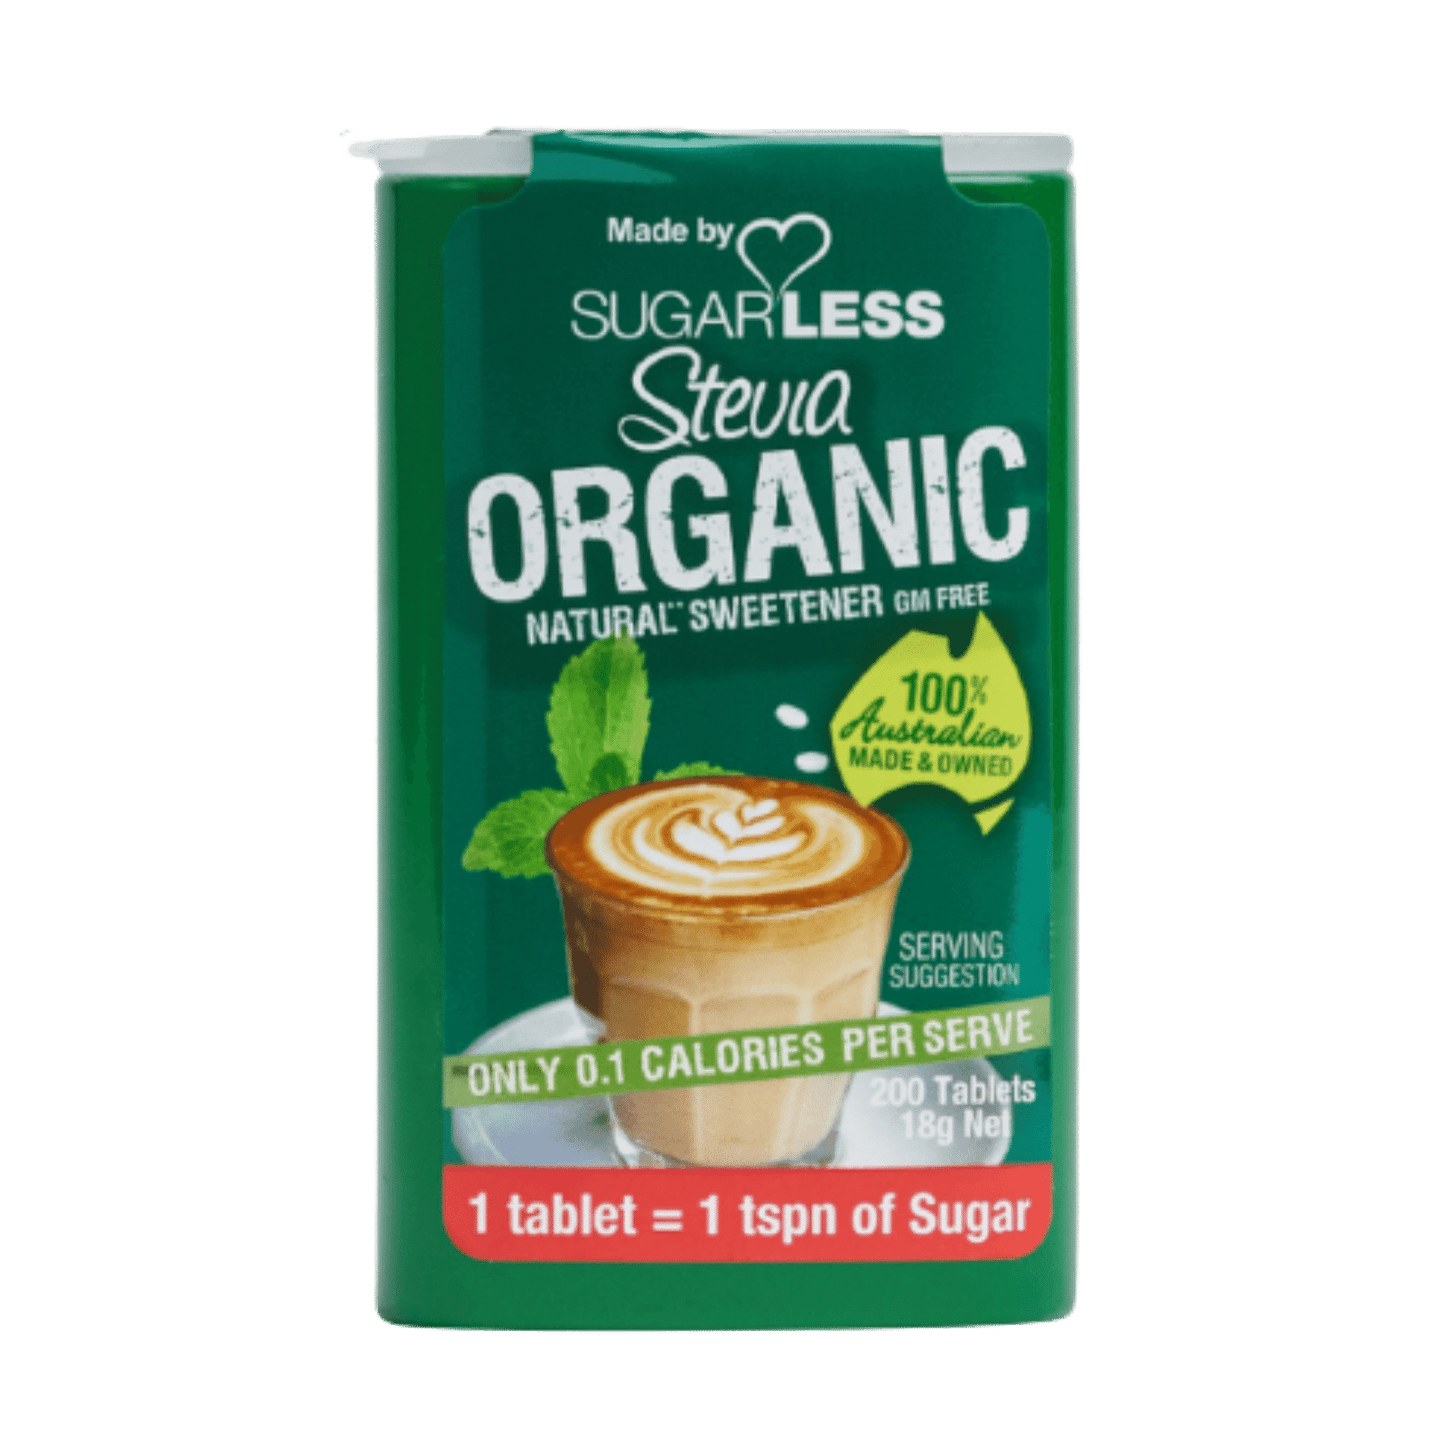 Sugarless Stevia Organic 200 Tablets